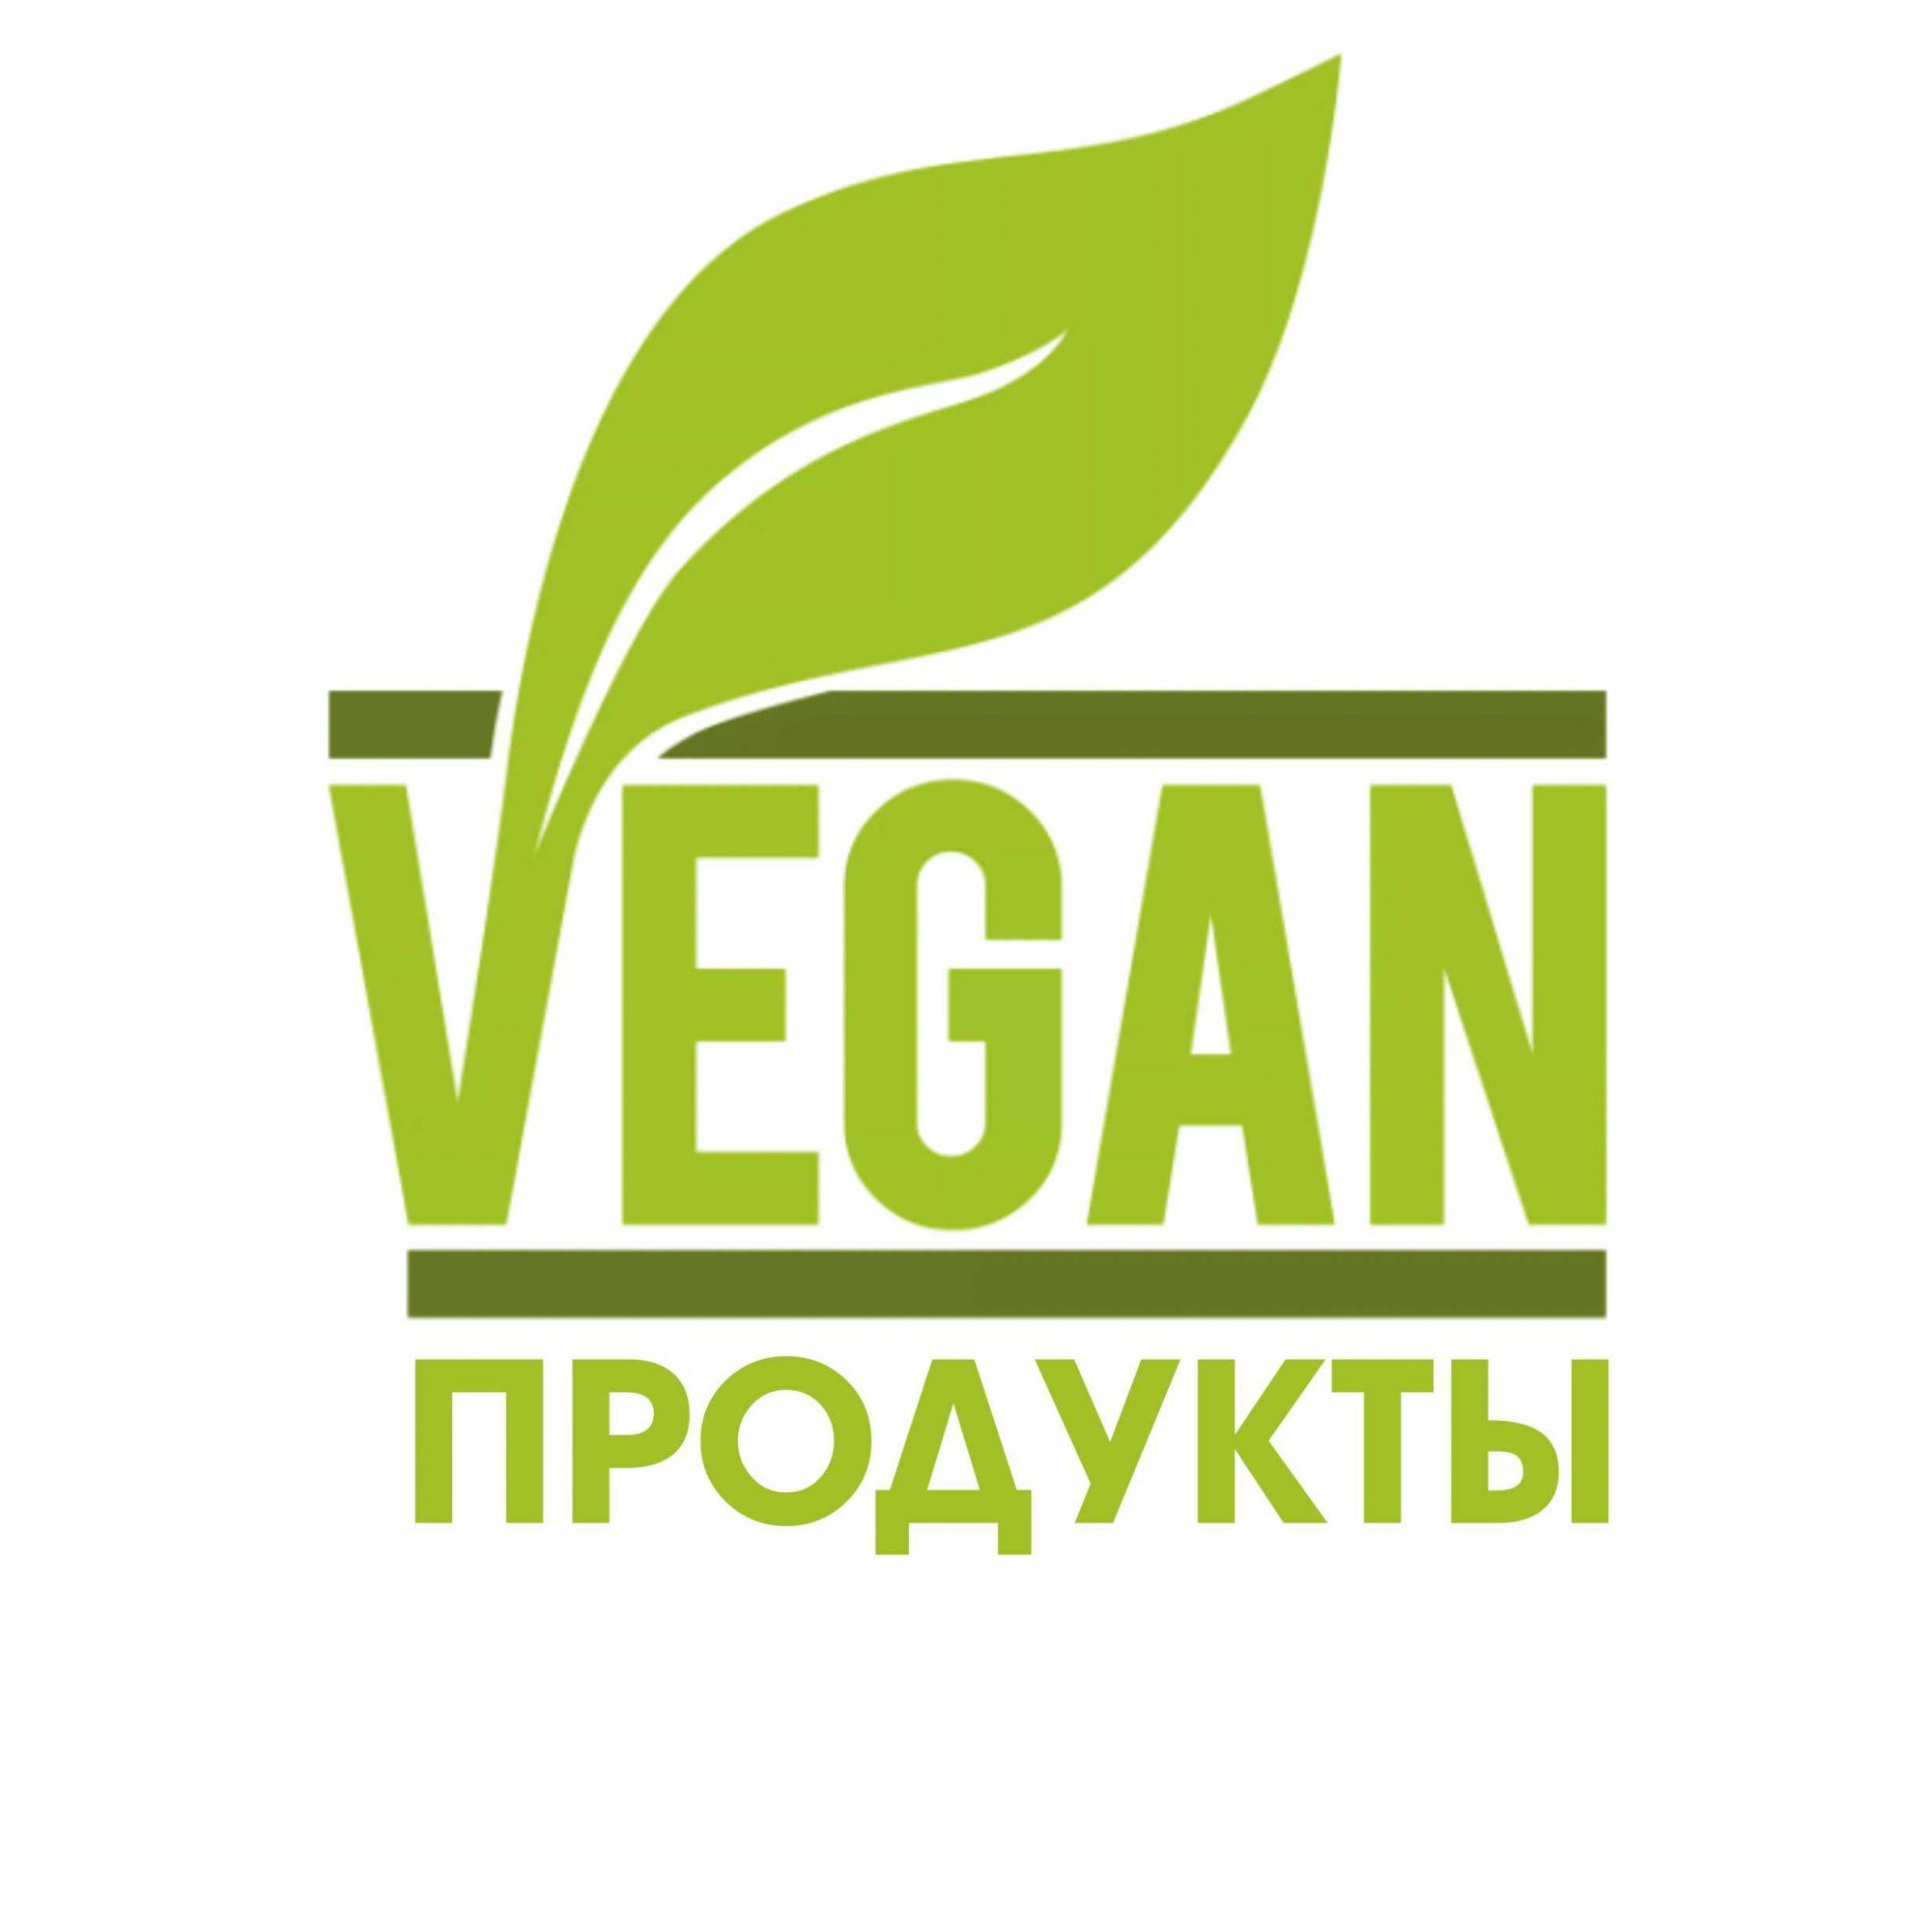 Продукция для веганов и вегетарианцев